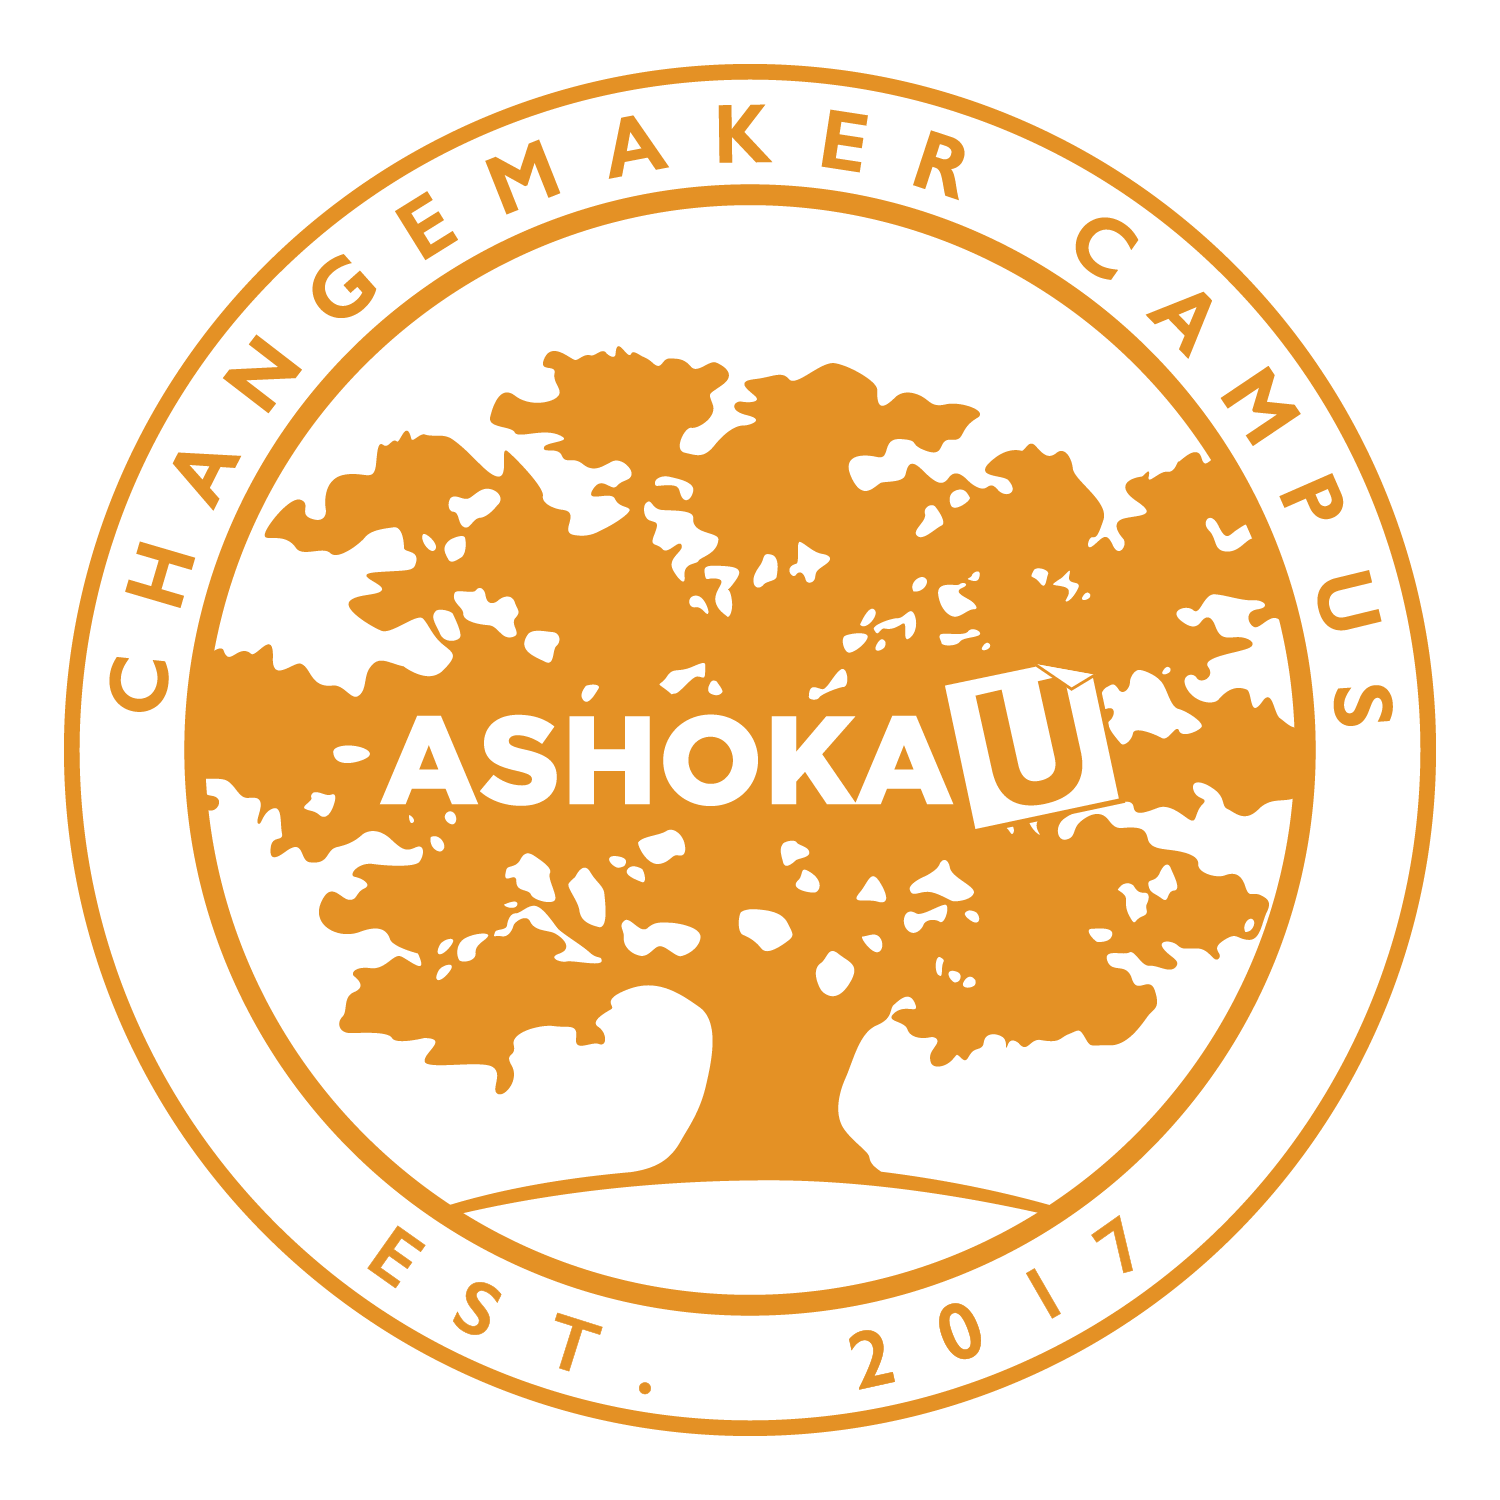 Ashoka U